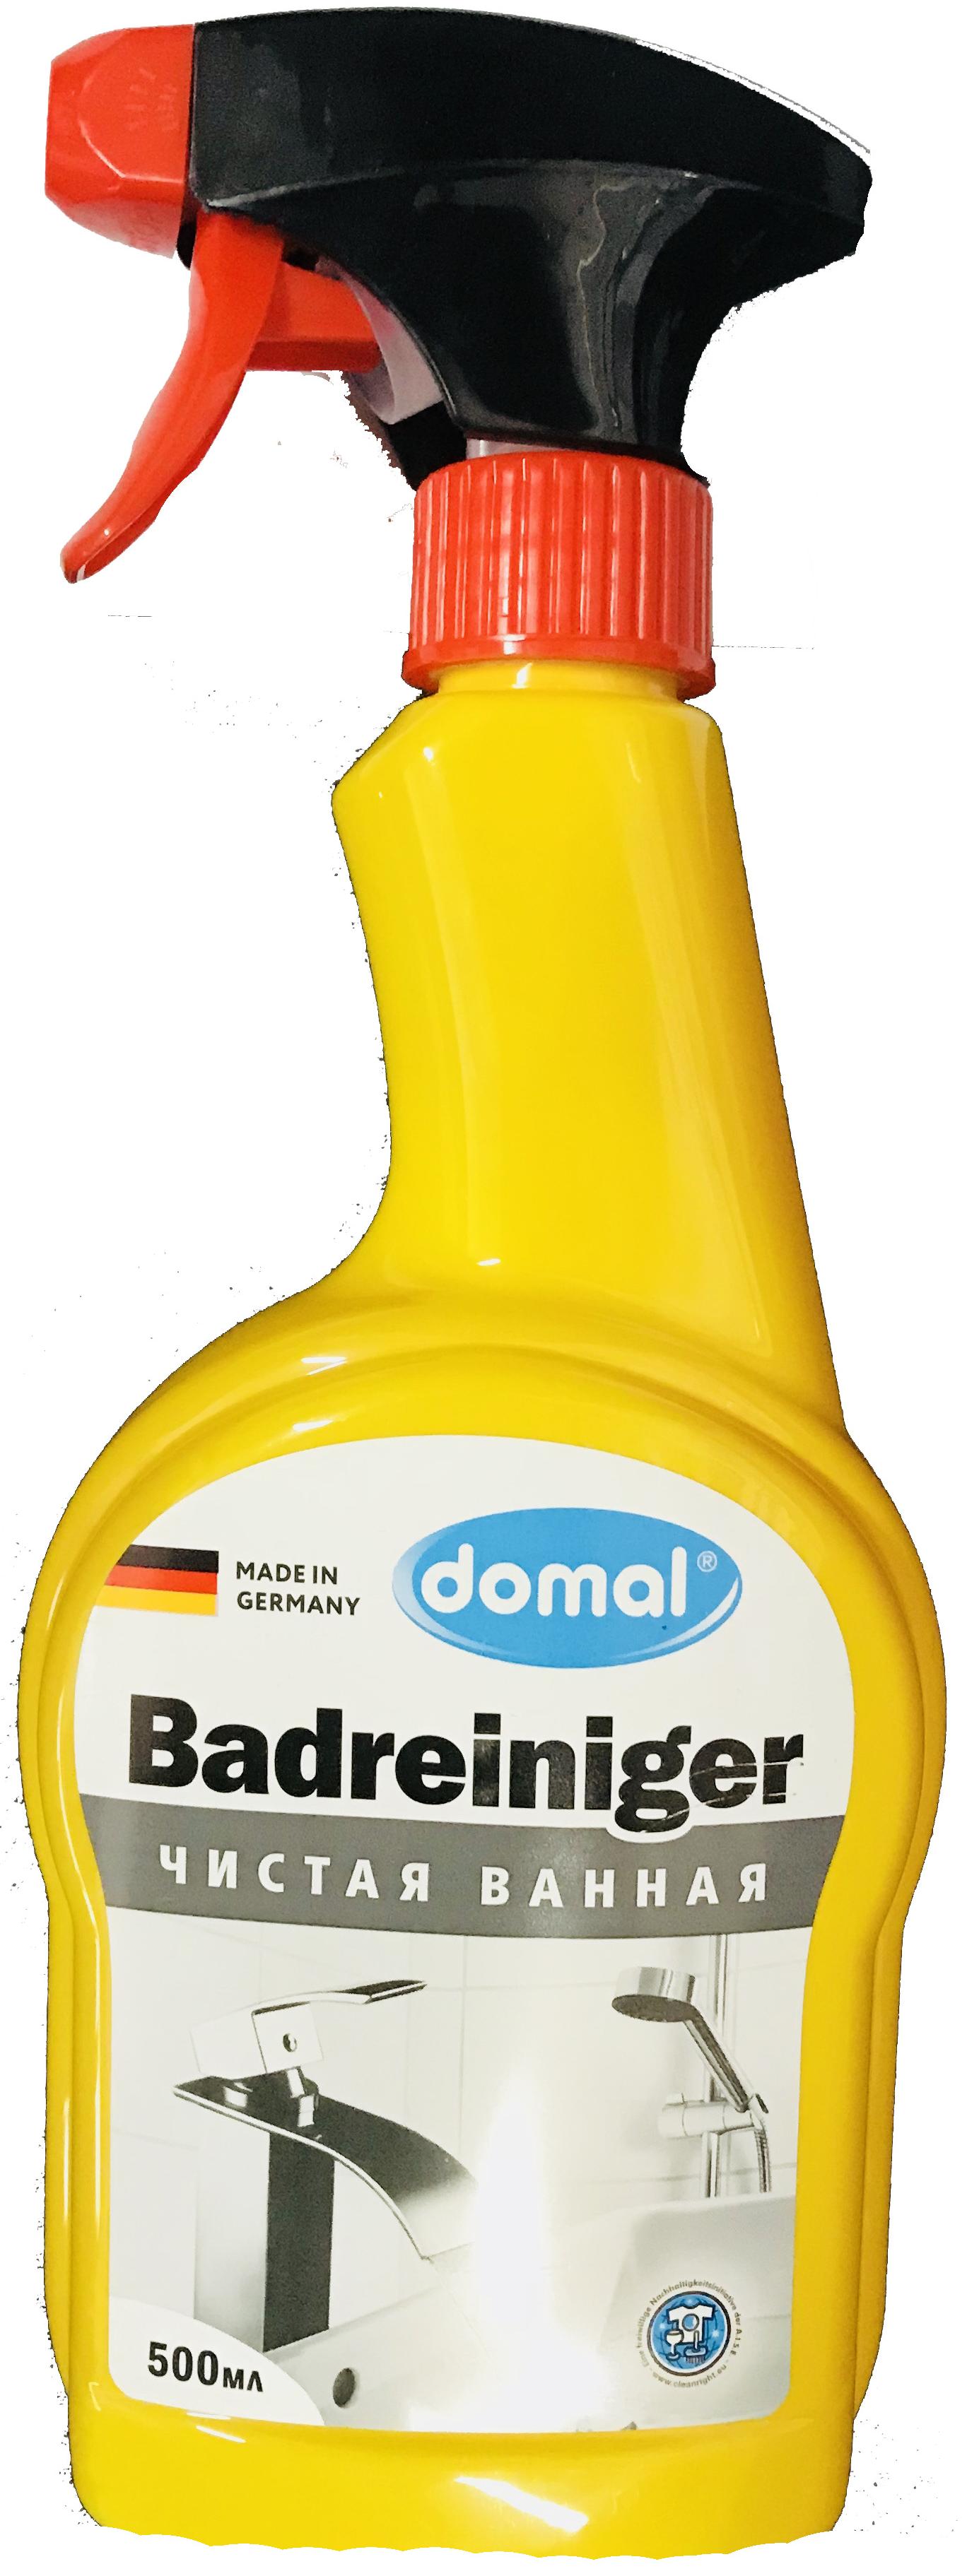 Domal Badreinger Чистая ванная Средство для чистки ванны и сантехники 500 мл с распылителем